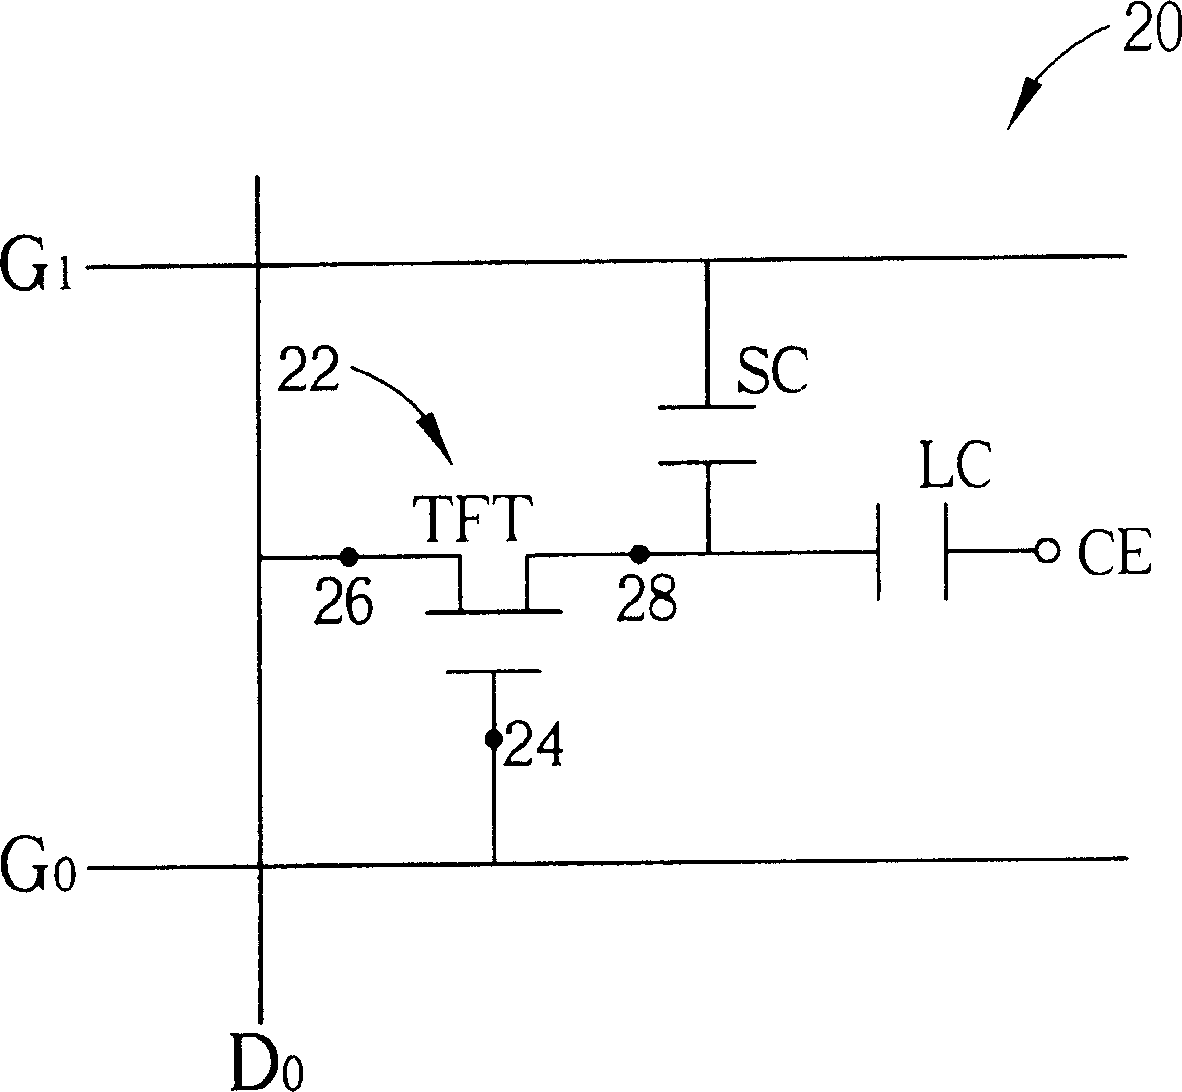 Capacitor arrangement